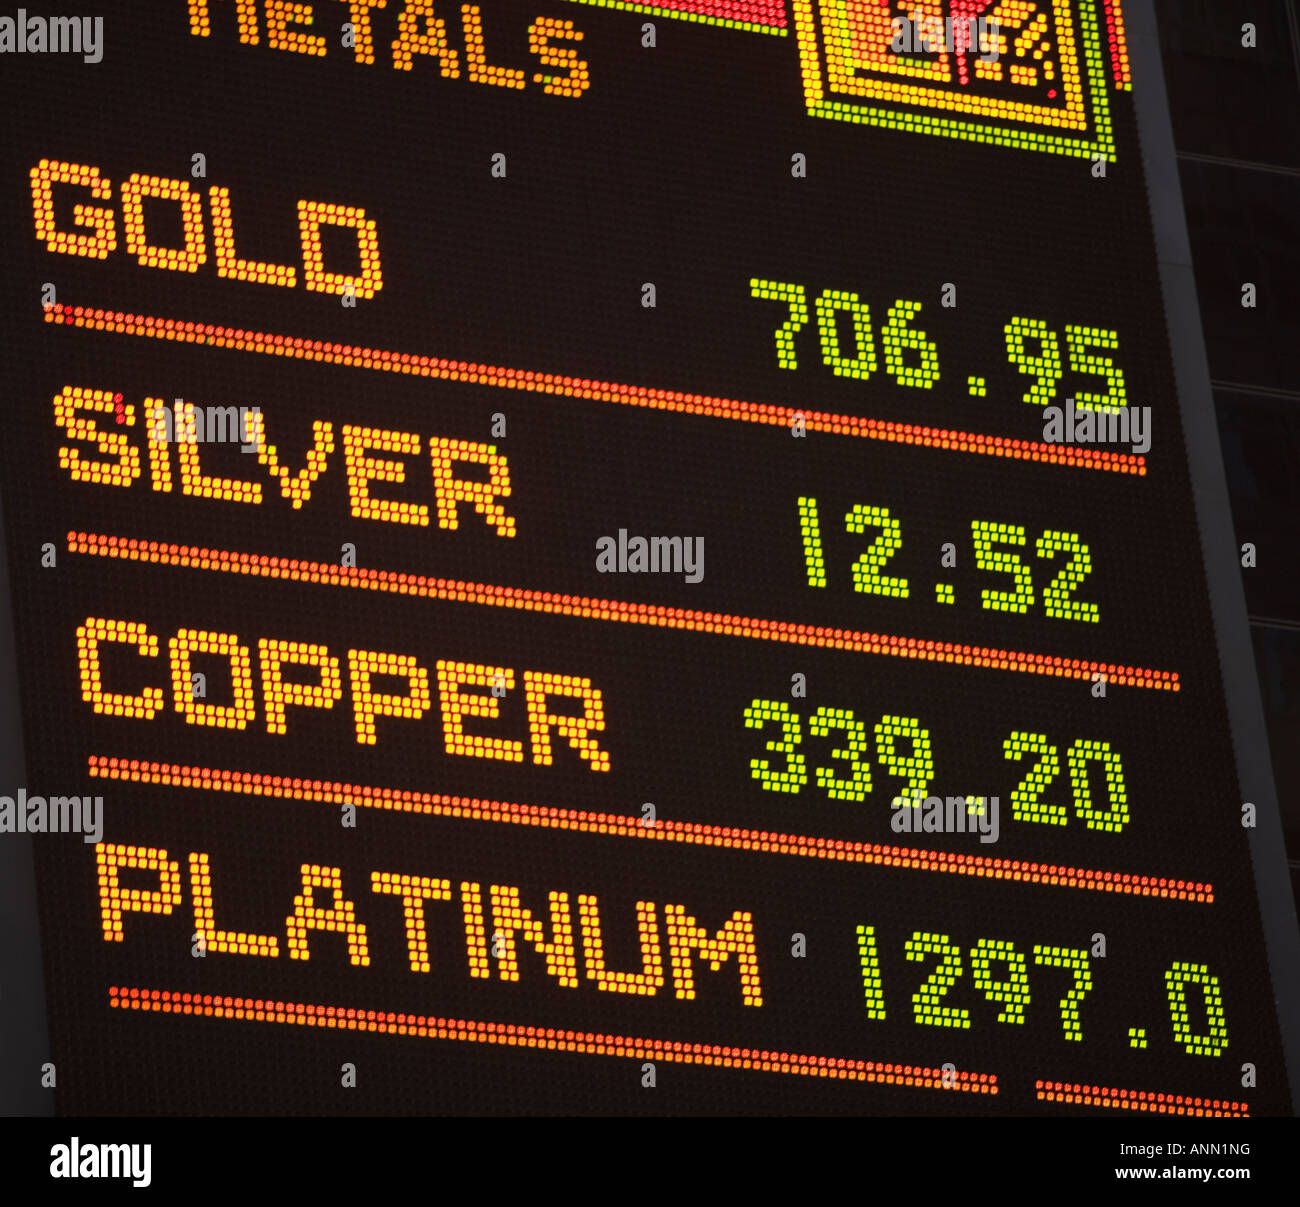 Commodity Exchange report Stock Photo